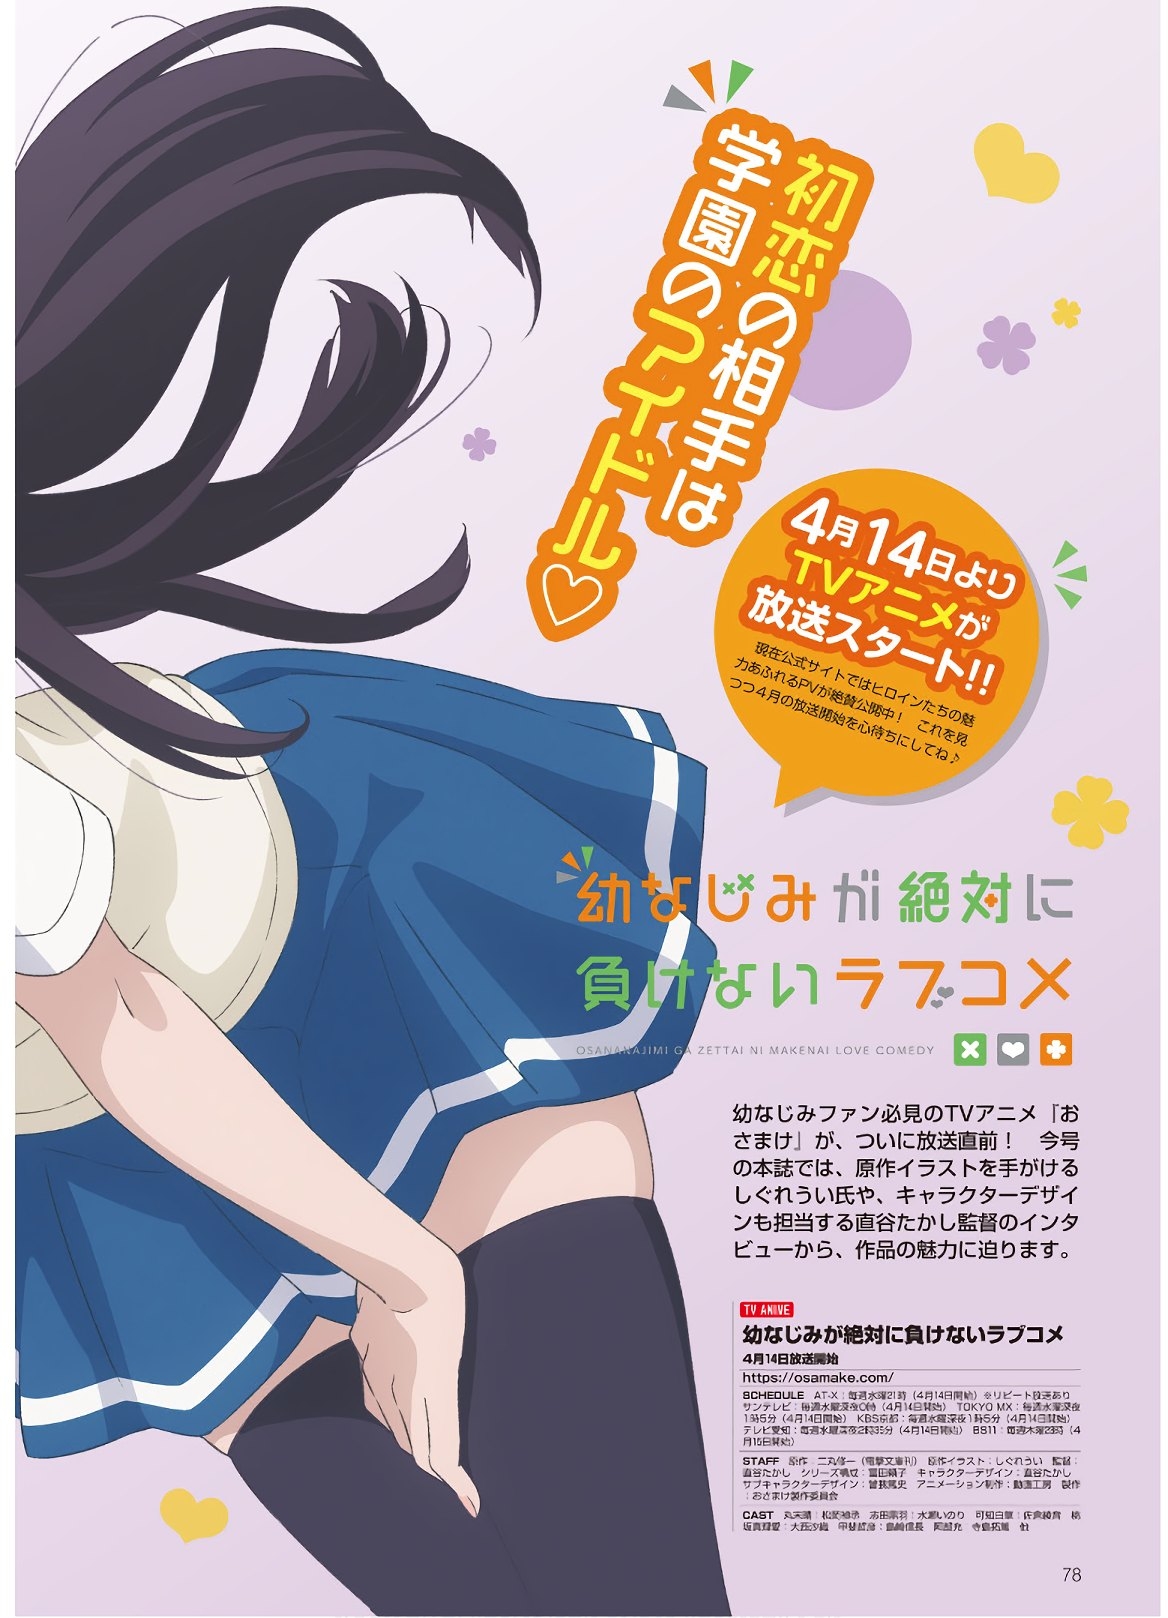 Dengeki G's Magazine #286 - May 2021 75